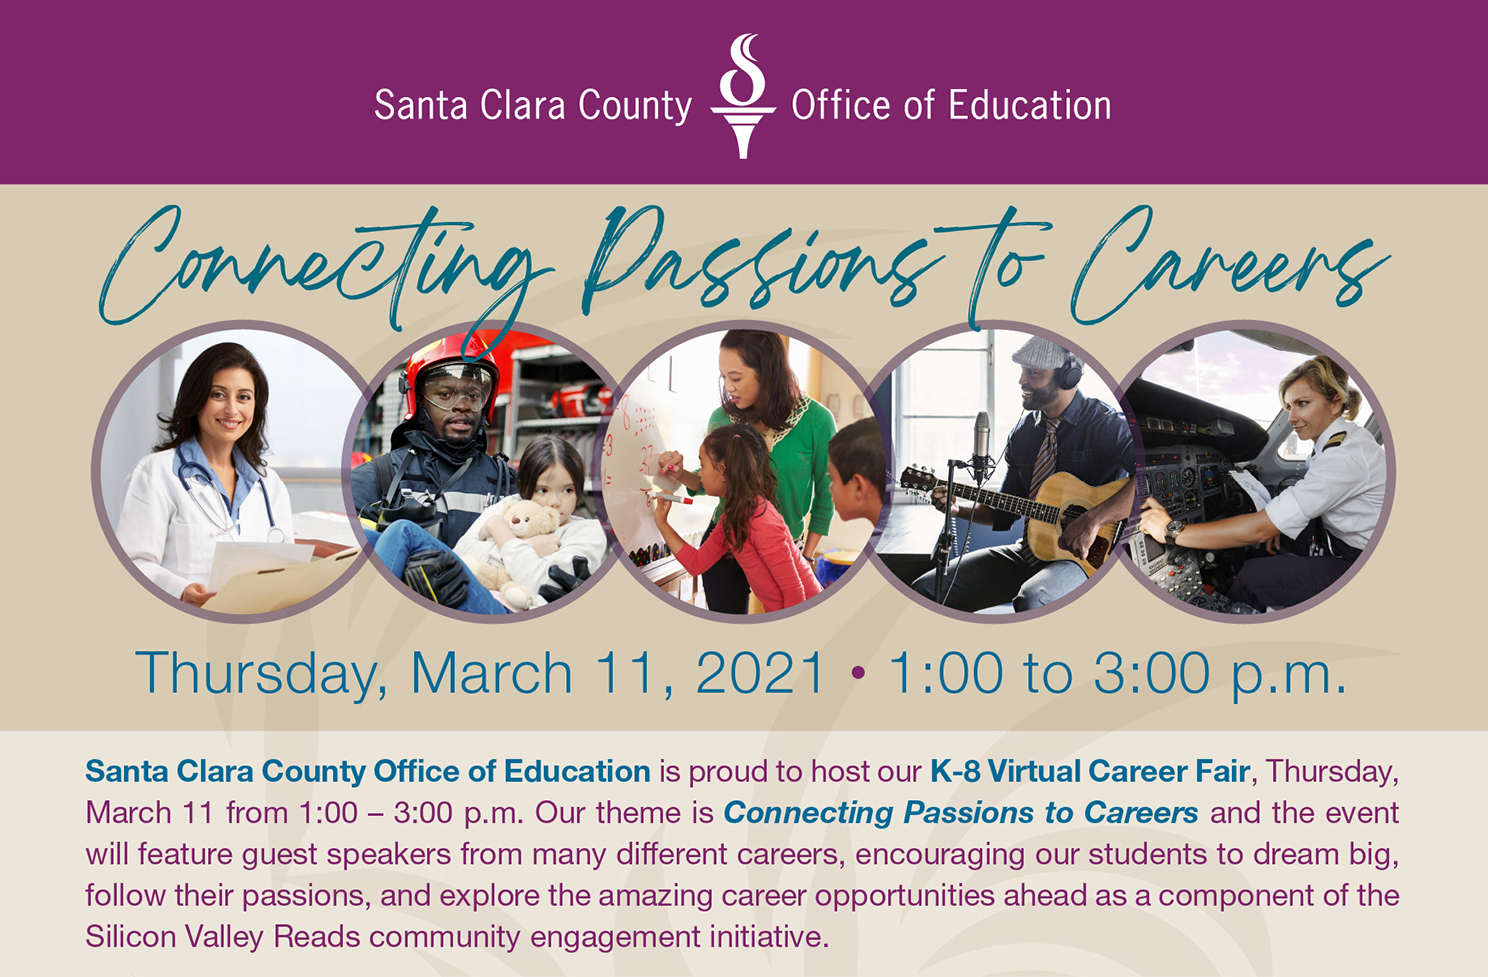 Santa Clara County Office of Education Career Fair 2021 